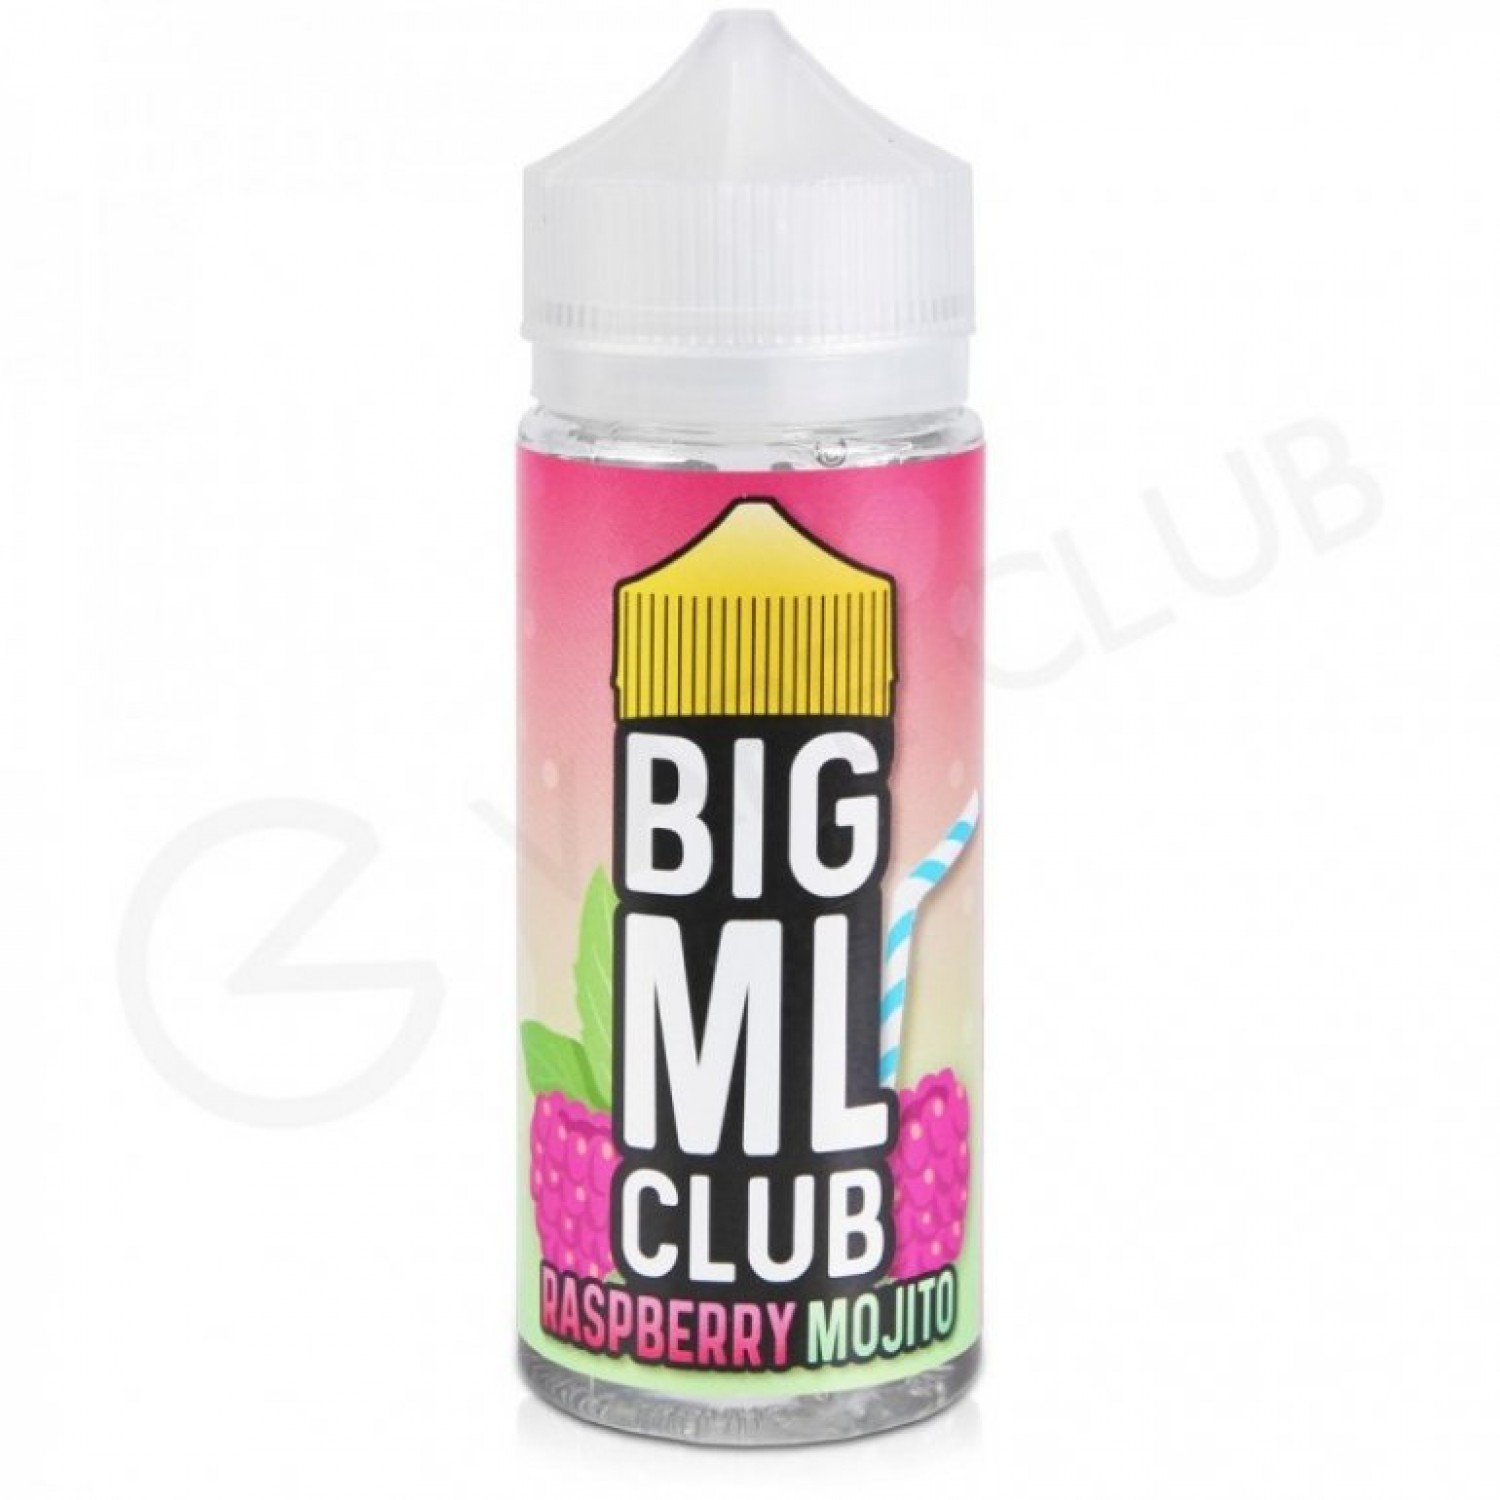 Big ML Club - Raspberry Mojito 120 ml Premium Likit